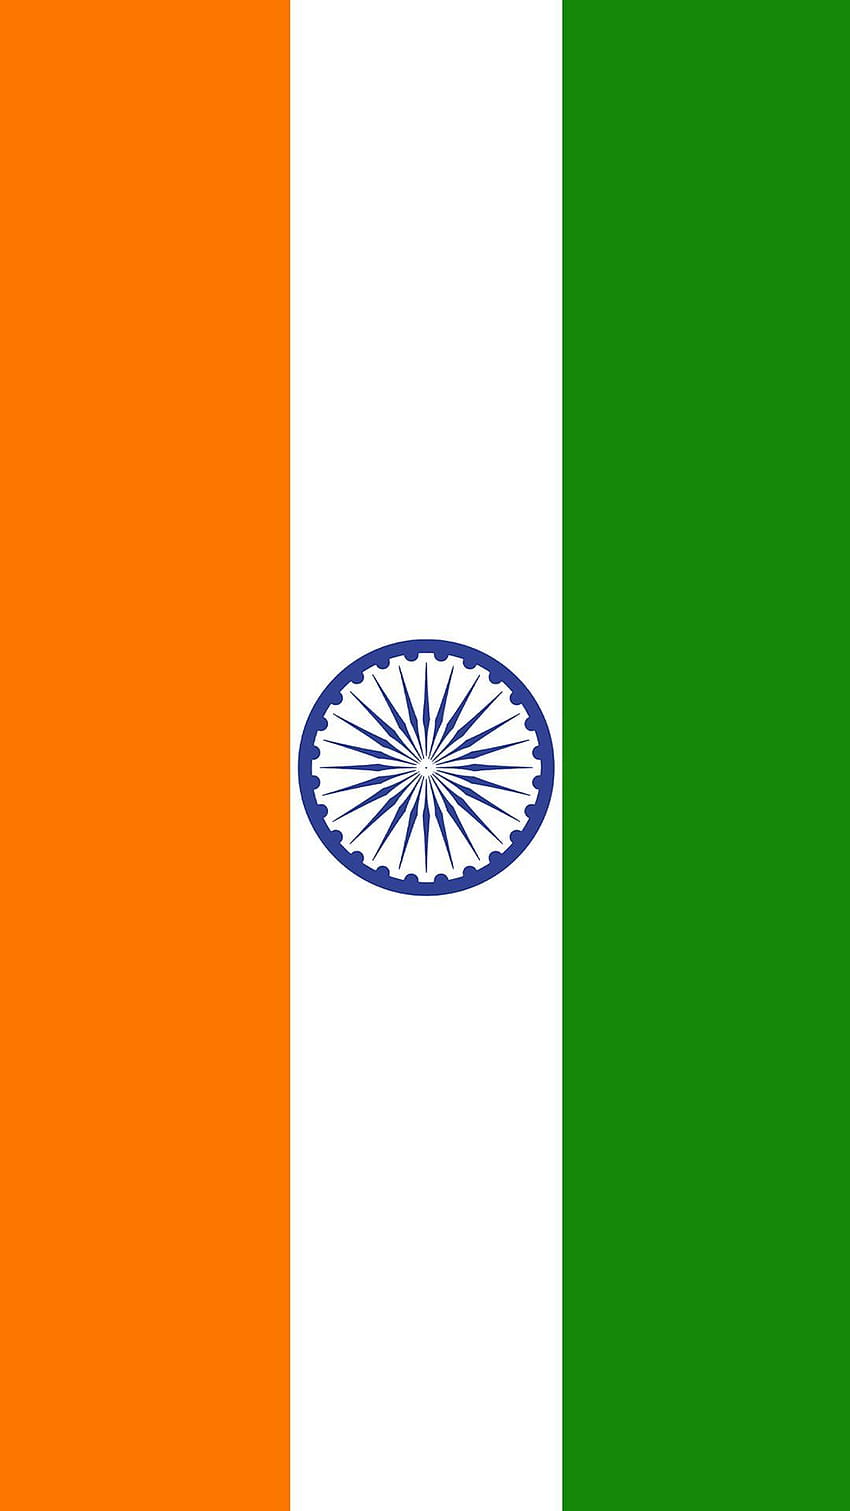 Bandera de India para teléfono móvil 01 de 17 – Tiranga, bandera india móvil 3d fondo de pantalla del teléfono